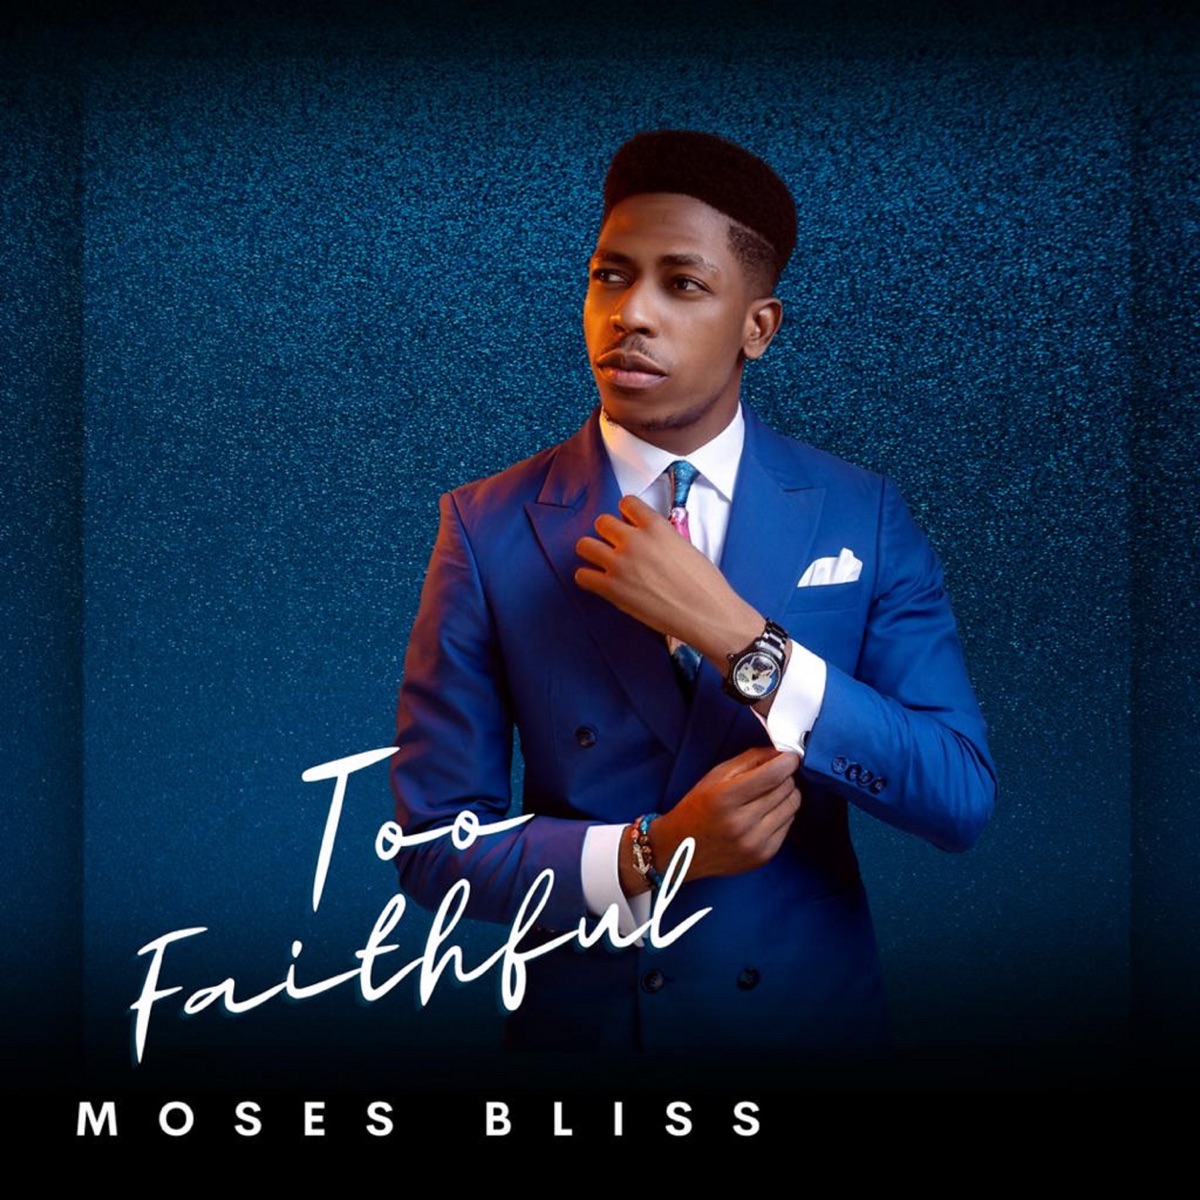 Moses Bliss – Too Faithful